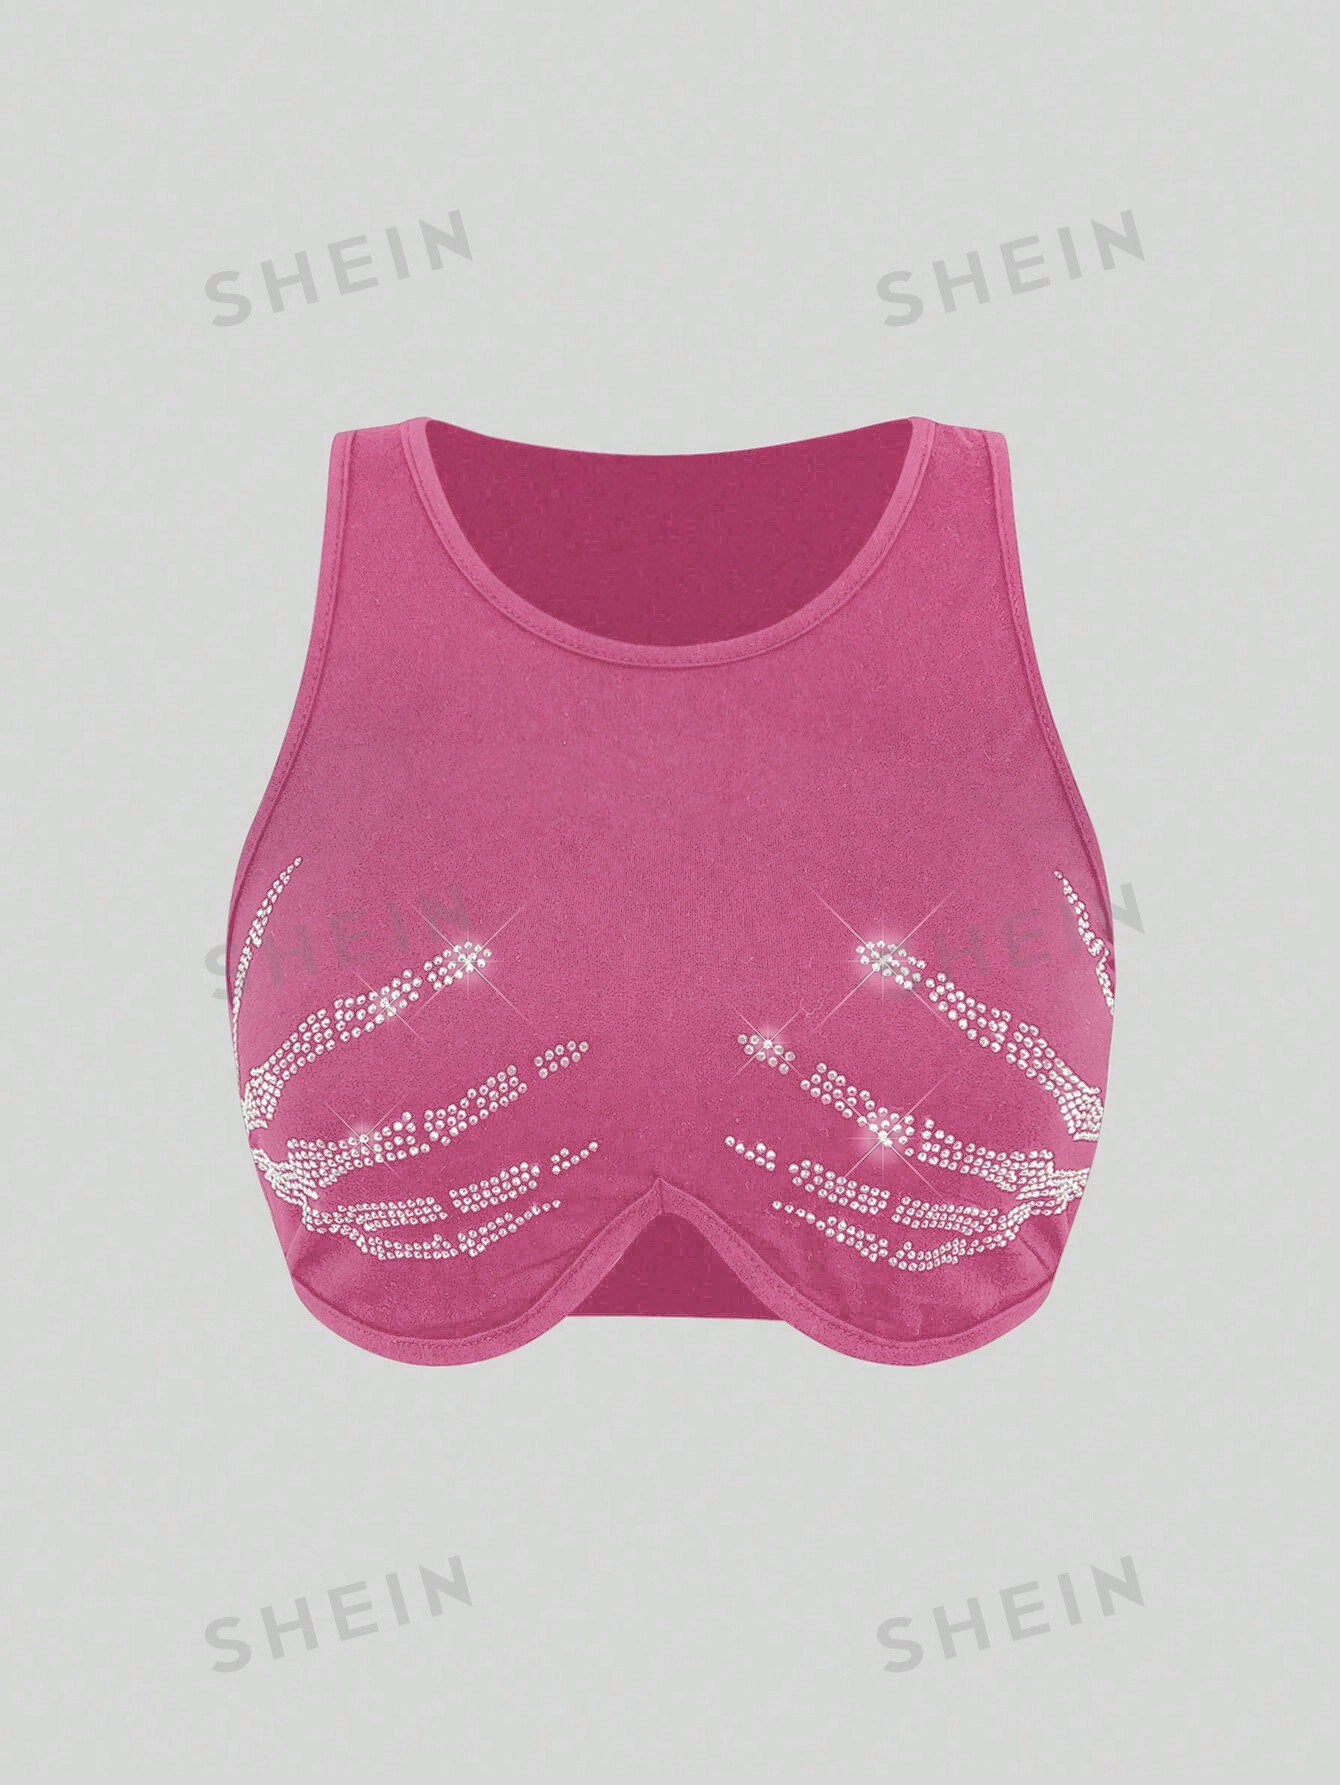 SHEIN Coolane Женский укороченный топ без рукавов с узором в виде черепа со стразами, розовый